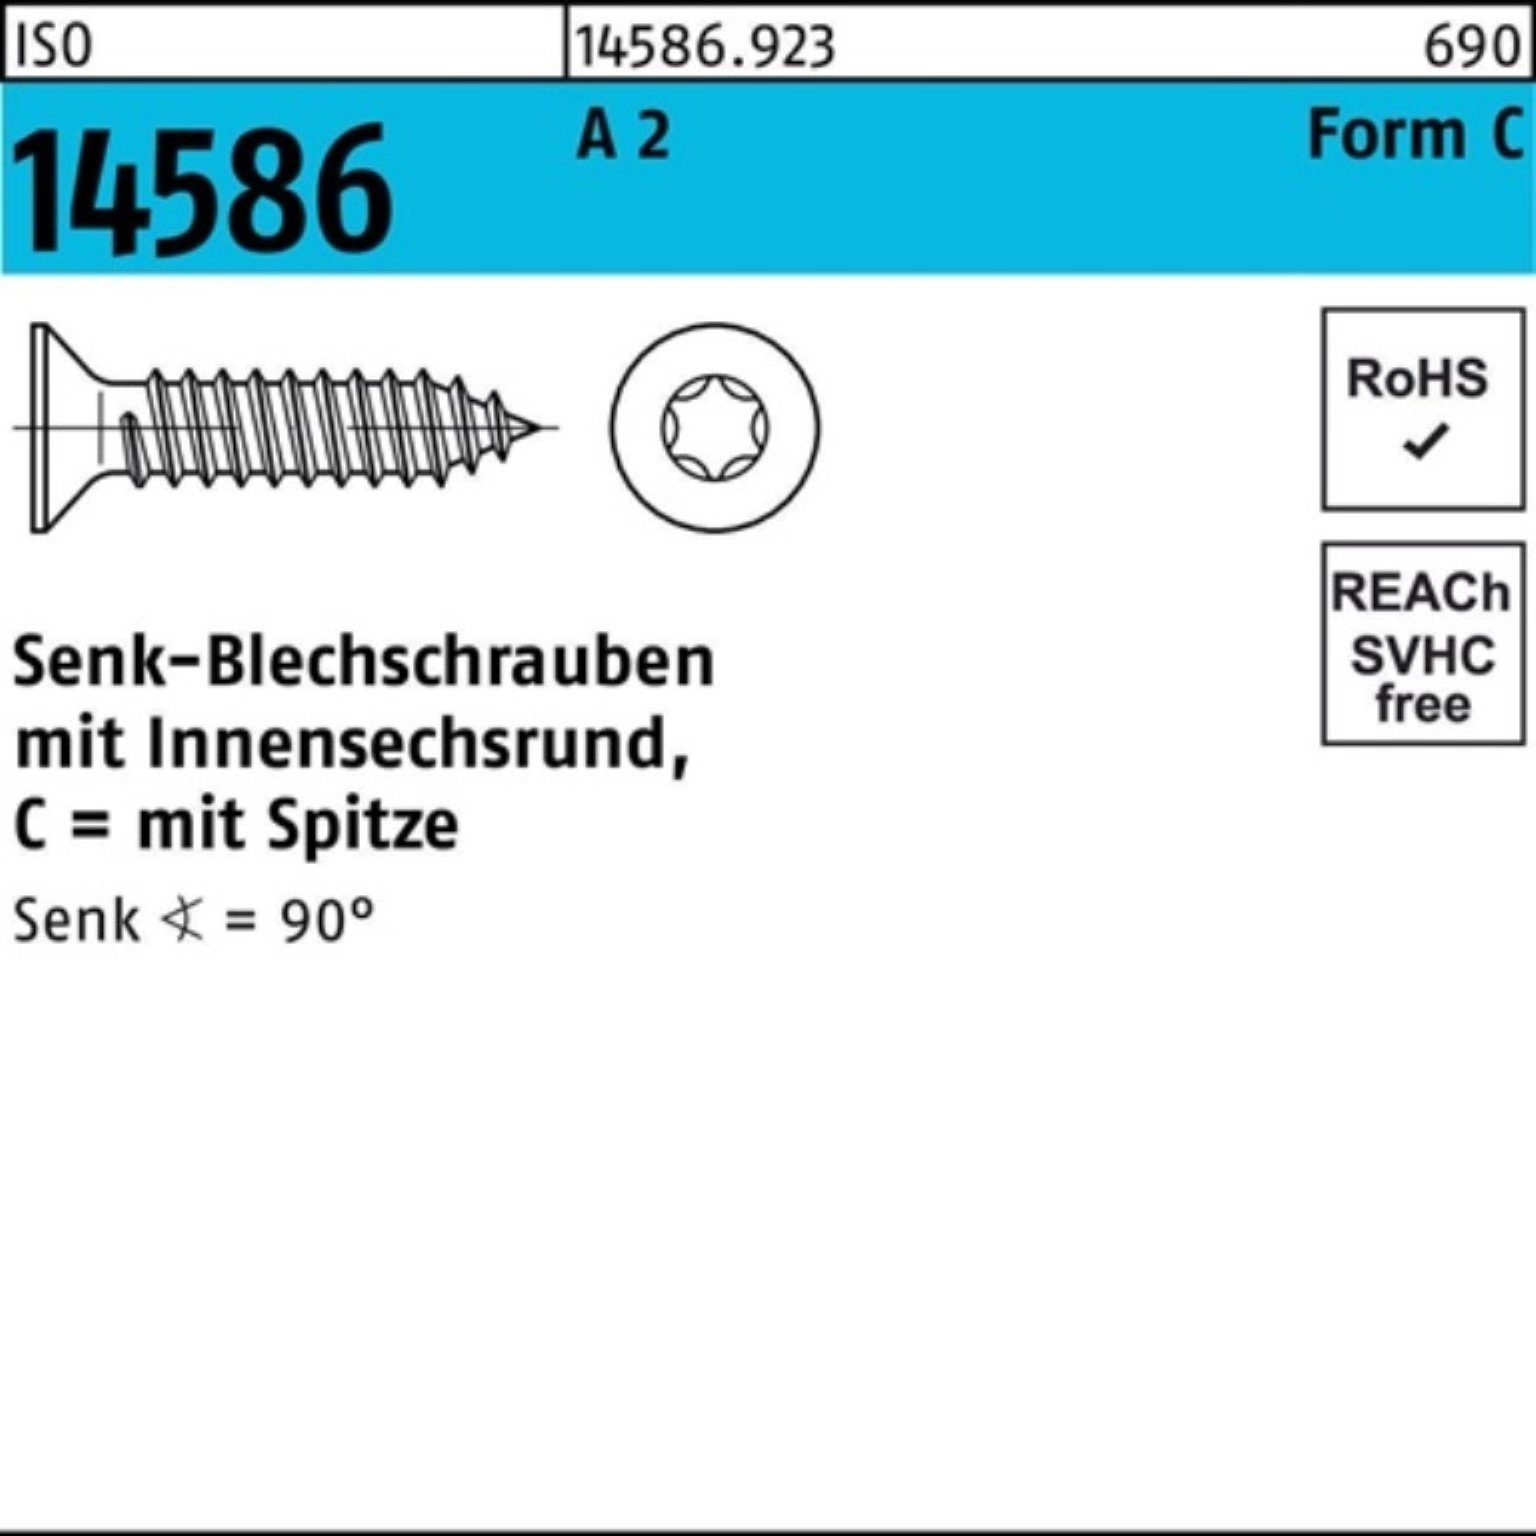 Reyher Schraube 500er Pack Senkblechschraube ISR/Spitze ISO 5 T25 2 14586 A 4,8x 22 -C